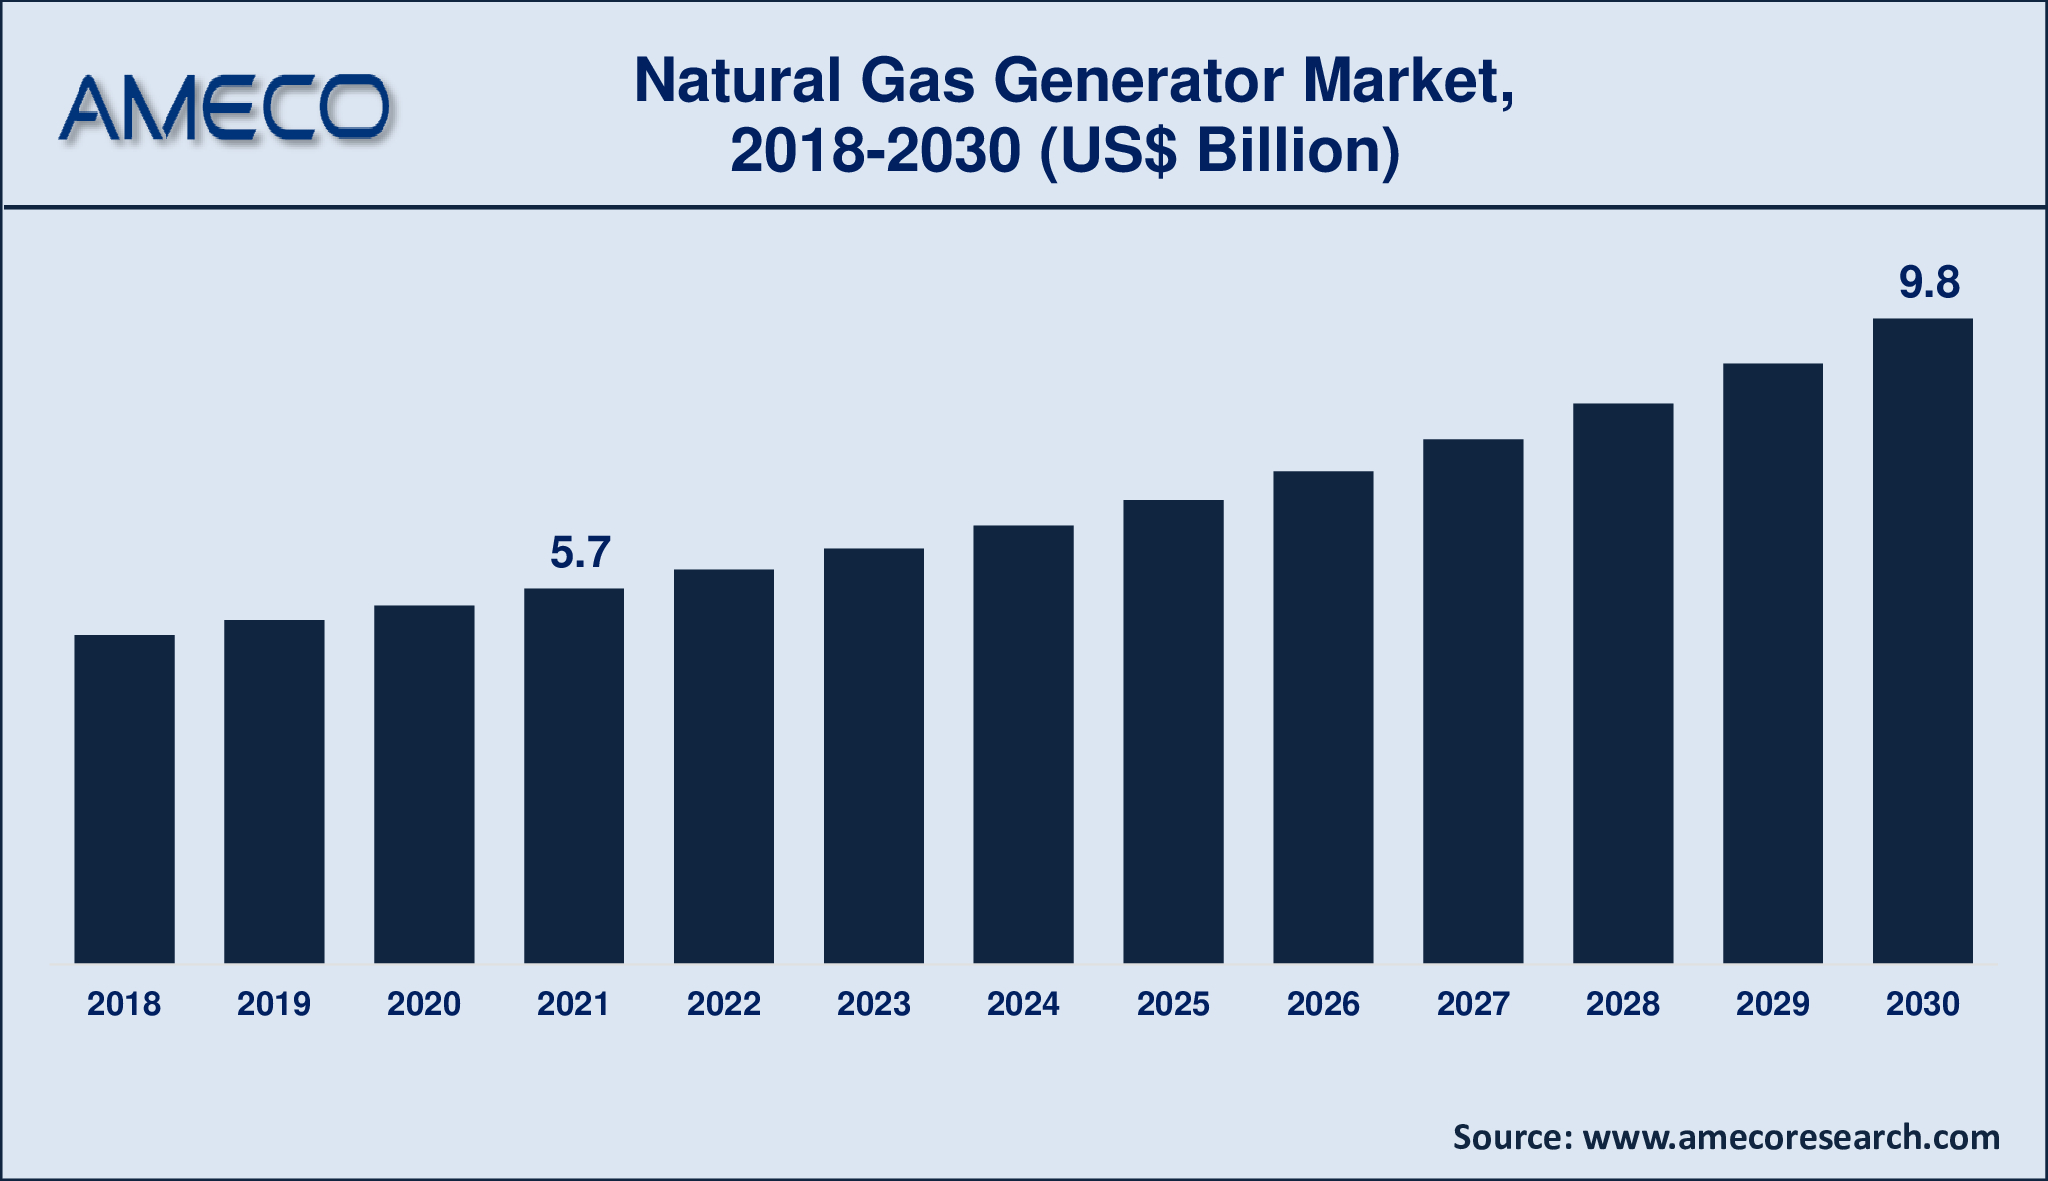 Natural Gas Generator Market Analysis Period